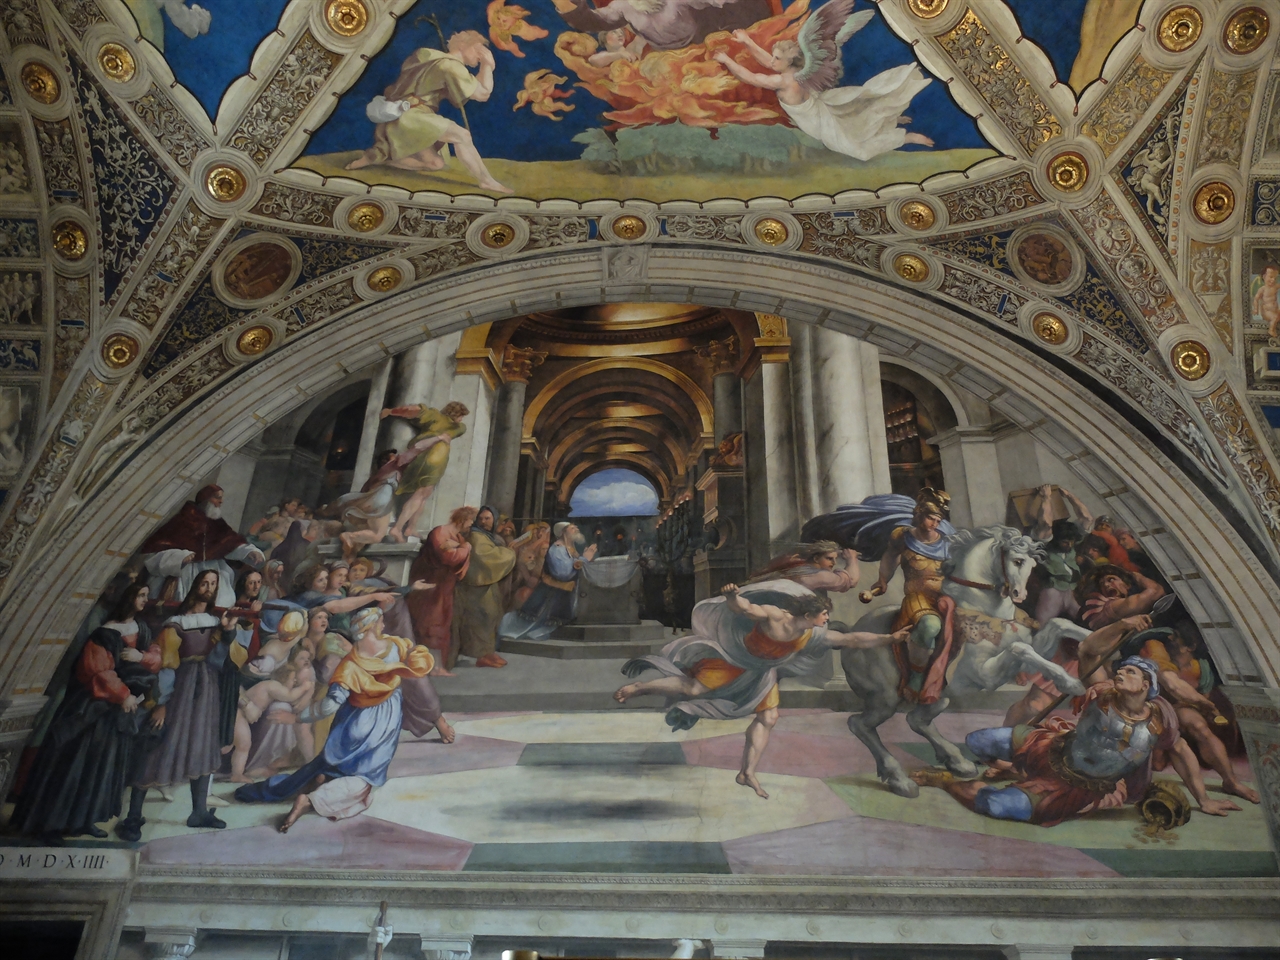 라파엘로, ‘성전에서 쫓겨나는 엘리오도로’, 바티칸 박물관 엘리오도로의 방. 예루살렘의 성전에 성물을 훔치러 들어온 엘리오도로를 천사들과 기사가 붙잡는 장면을 묘사한 그림입니다. 